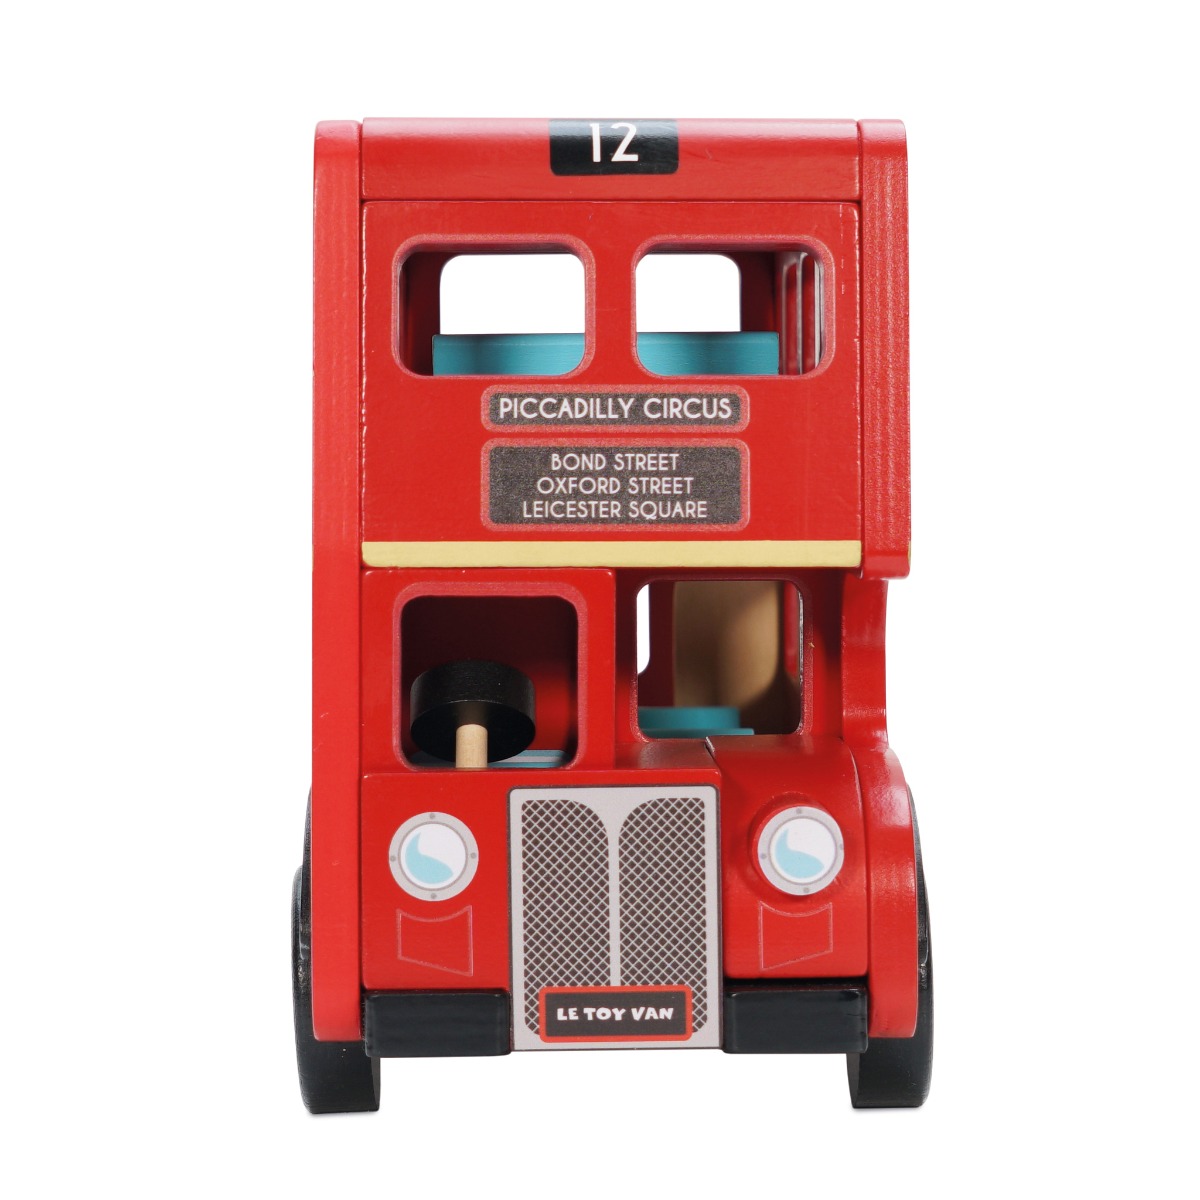 Drevený Londýnsky autobus